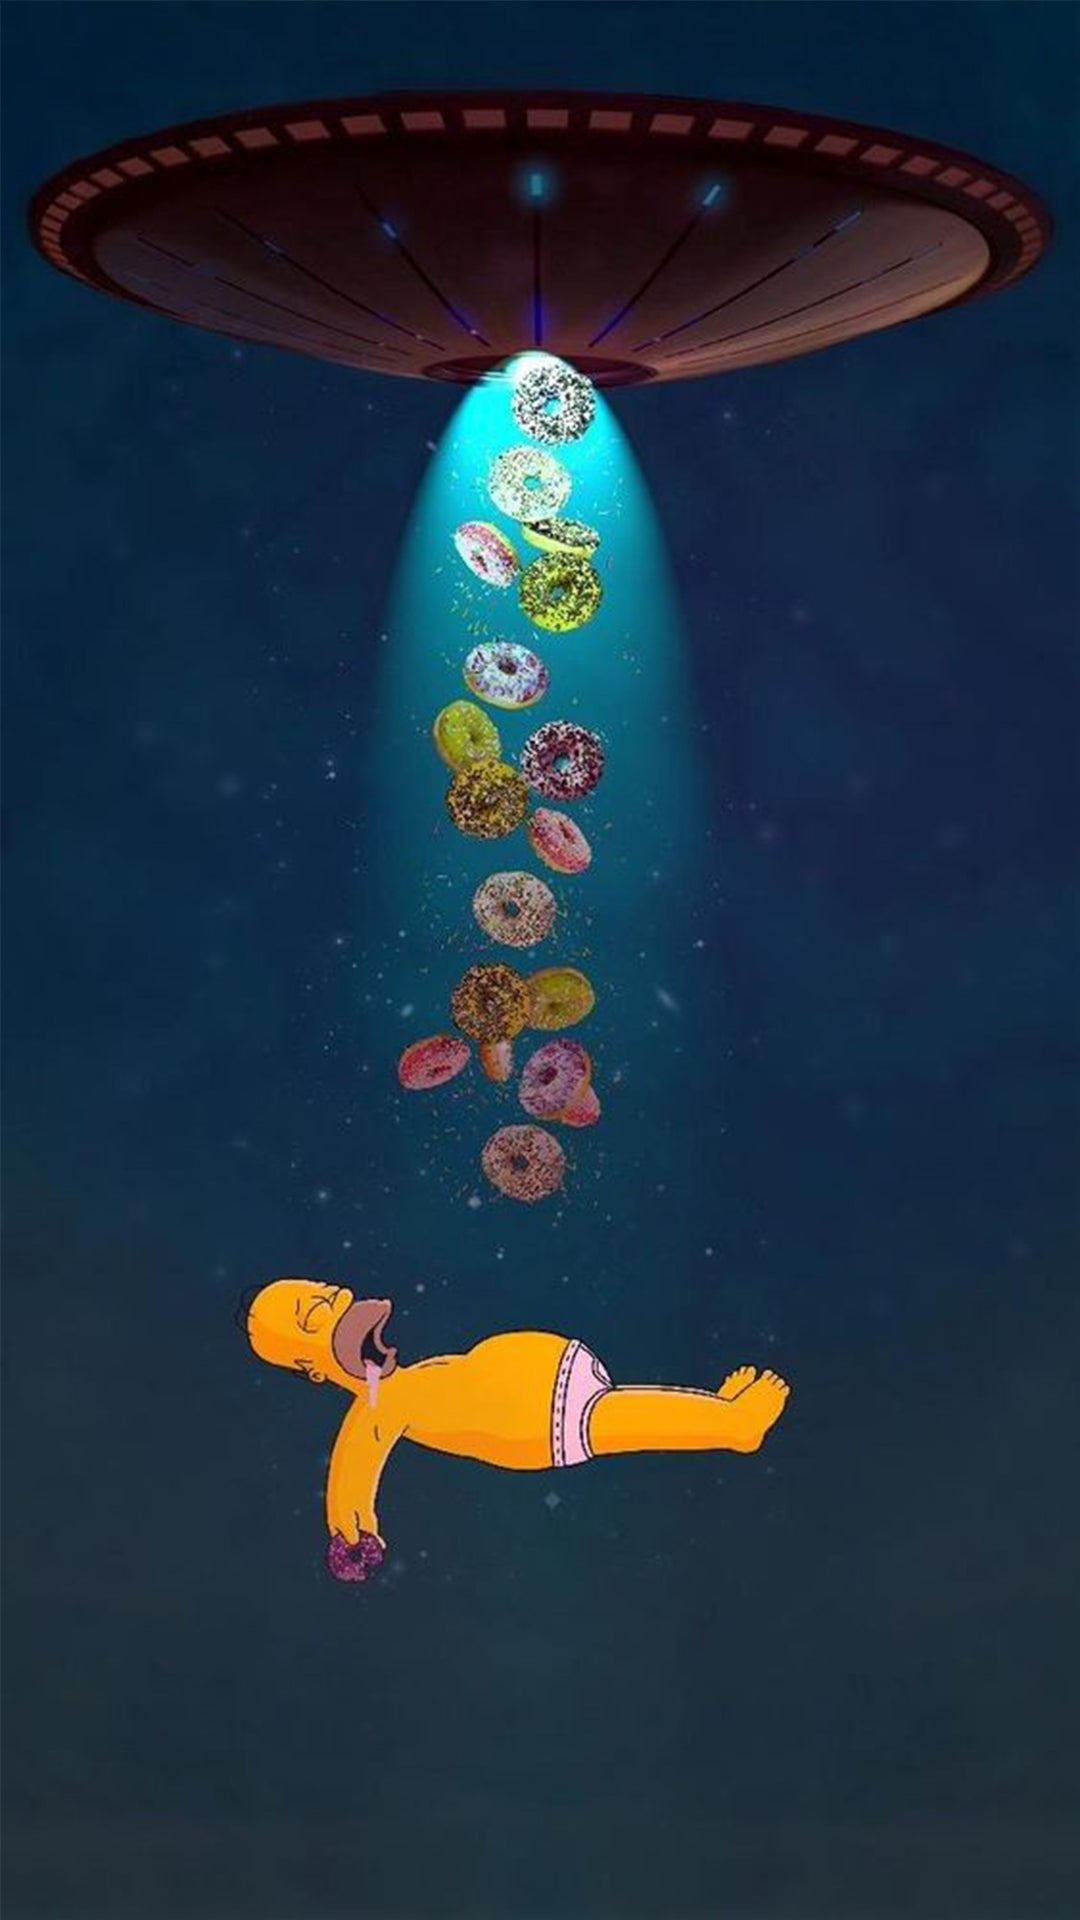 Homer en slip en apesanteur avec des donuts et capturé par un vaisseau d'extraterrestres par une nuit étoilée.